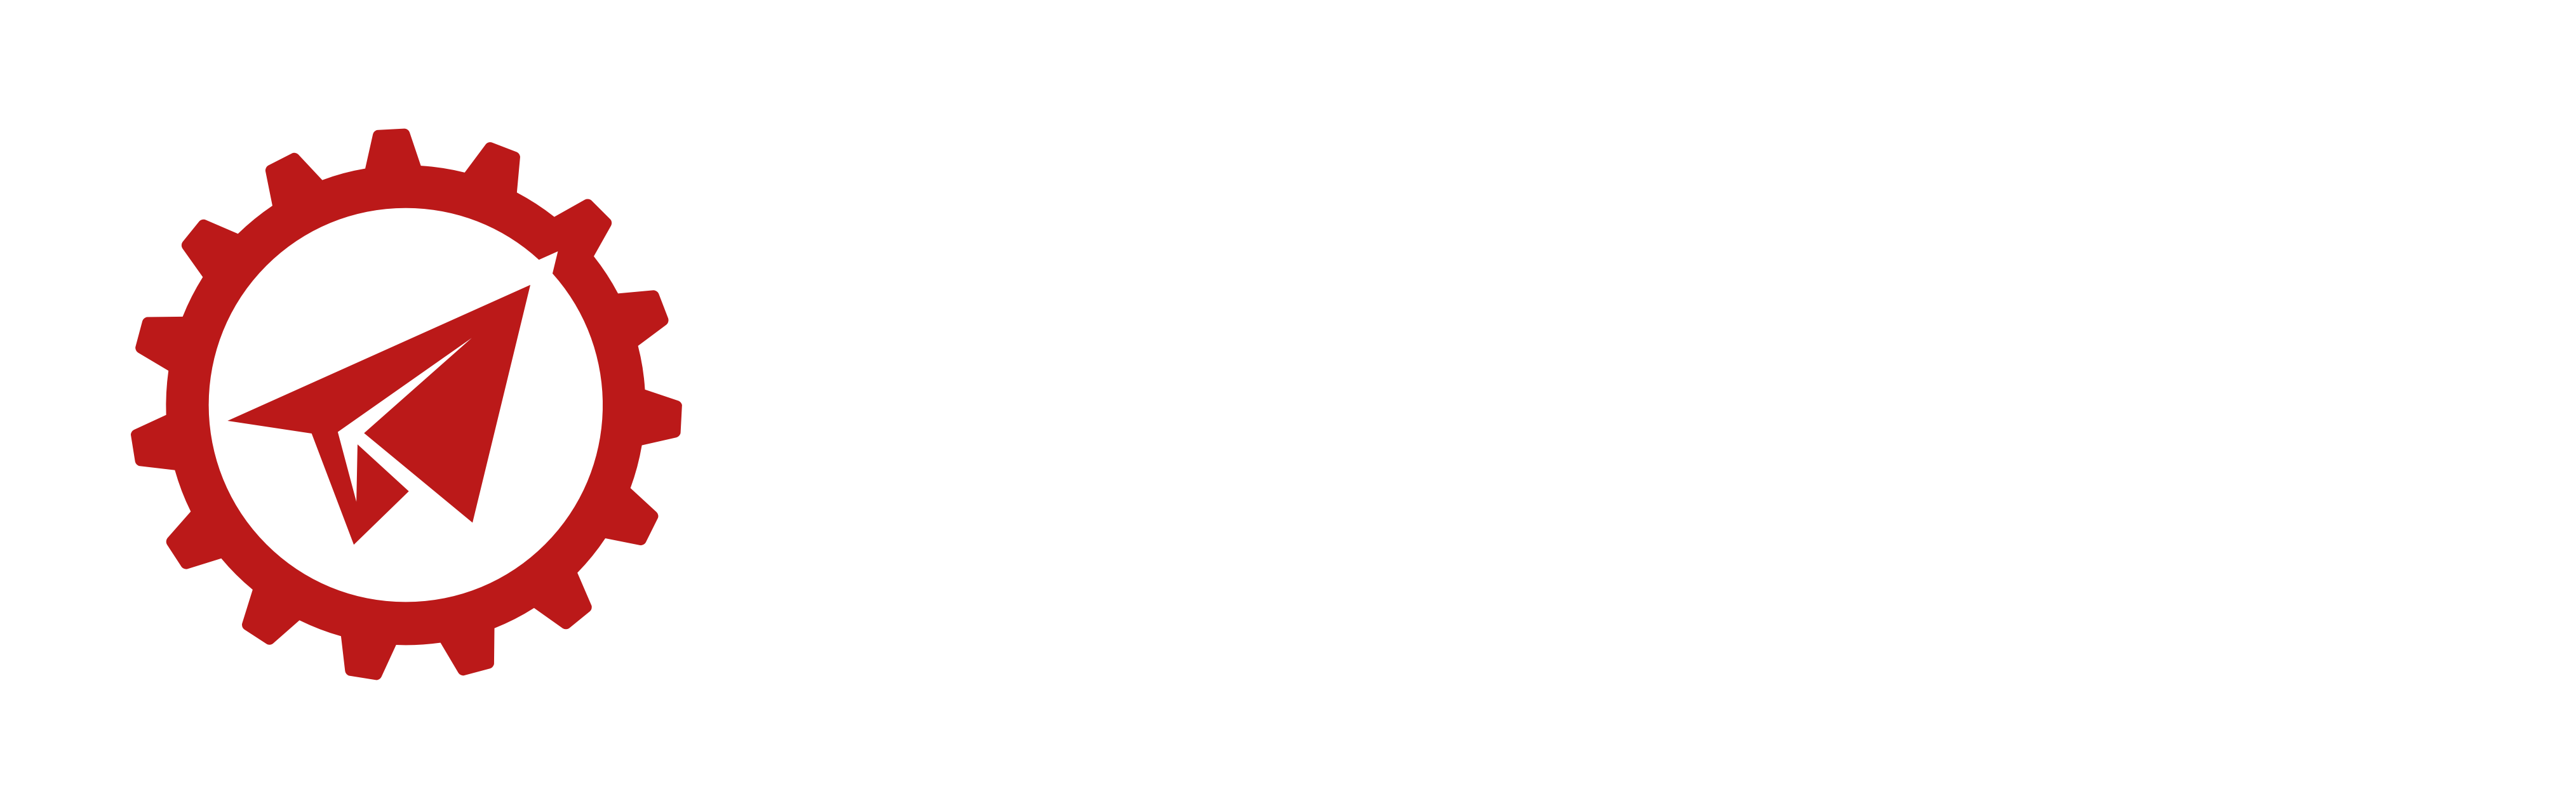 Kireikoi.nl